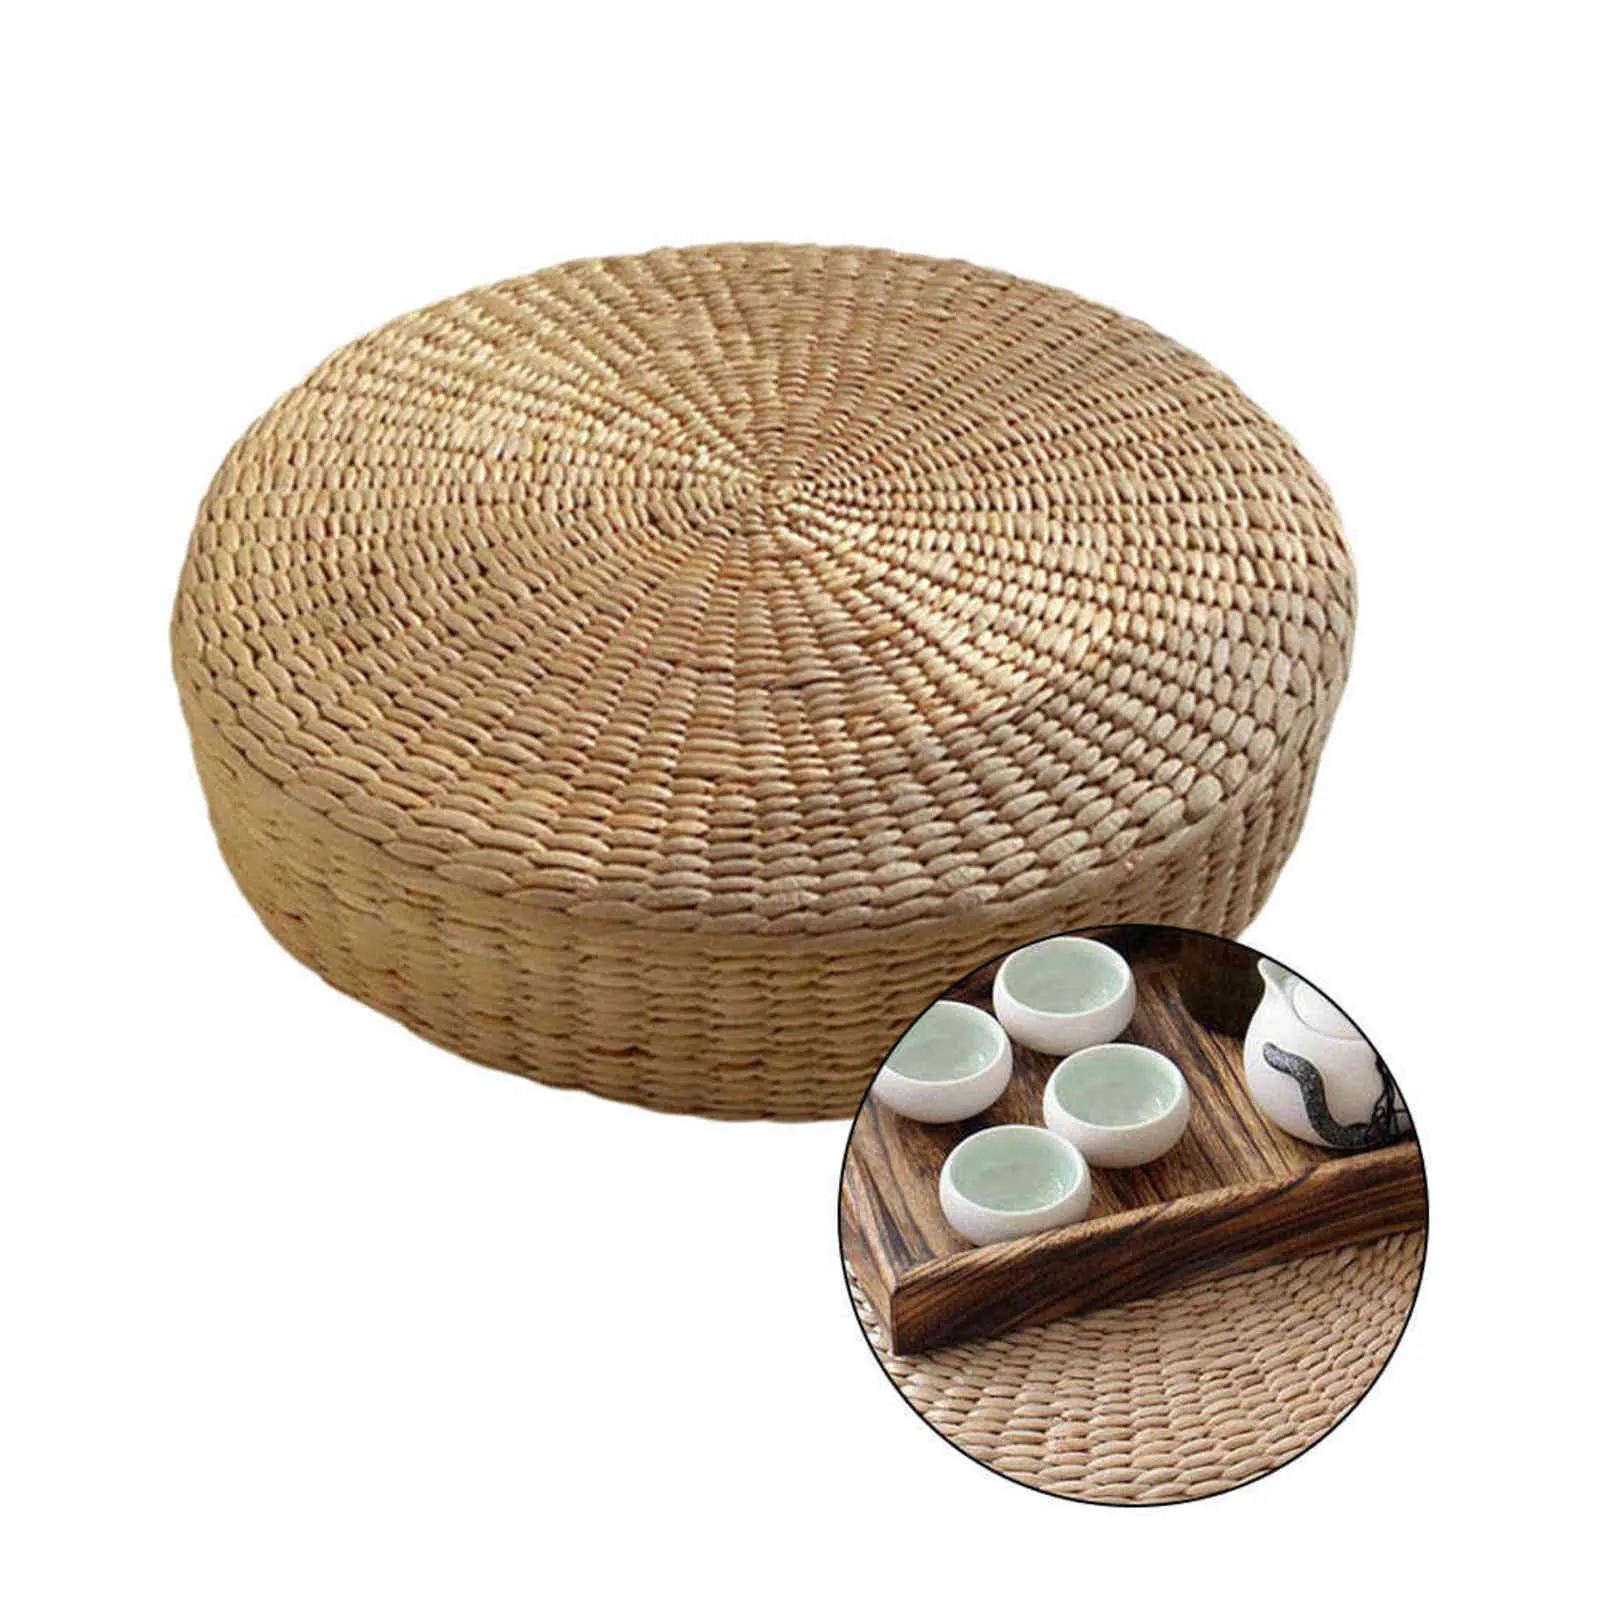 Almofada de chão ecológica redonda, almofada de palha tecida à mão, esteira de tatami, yoga, cerimônia de chá, almofada de meditação 2111102507020